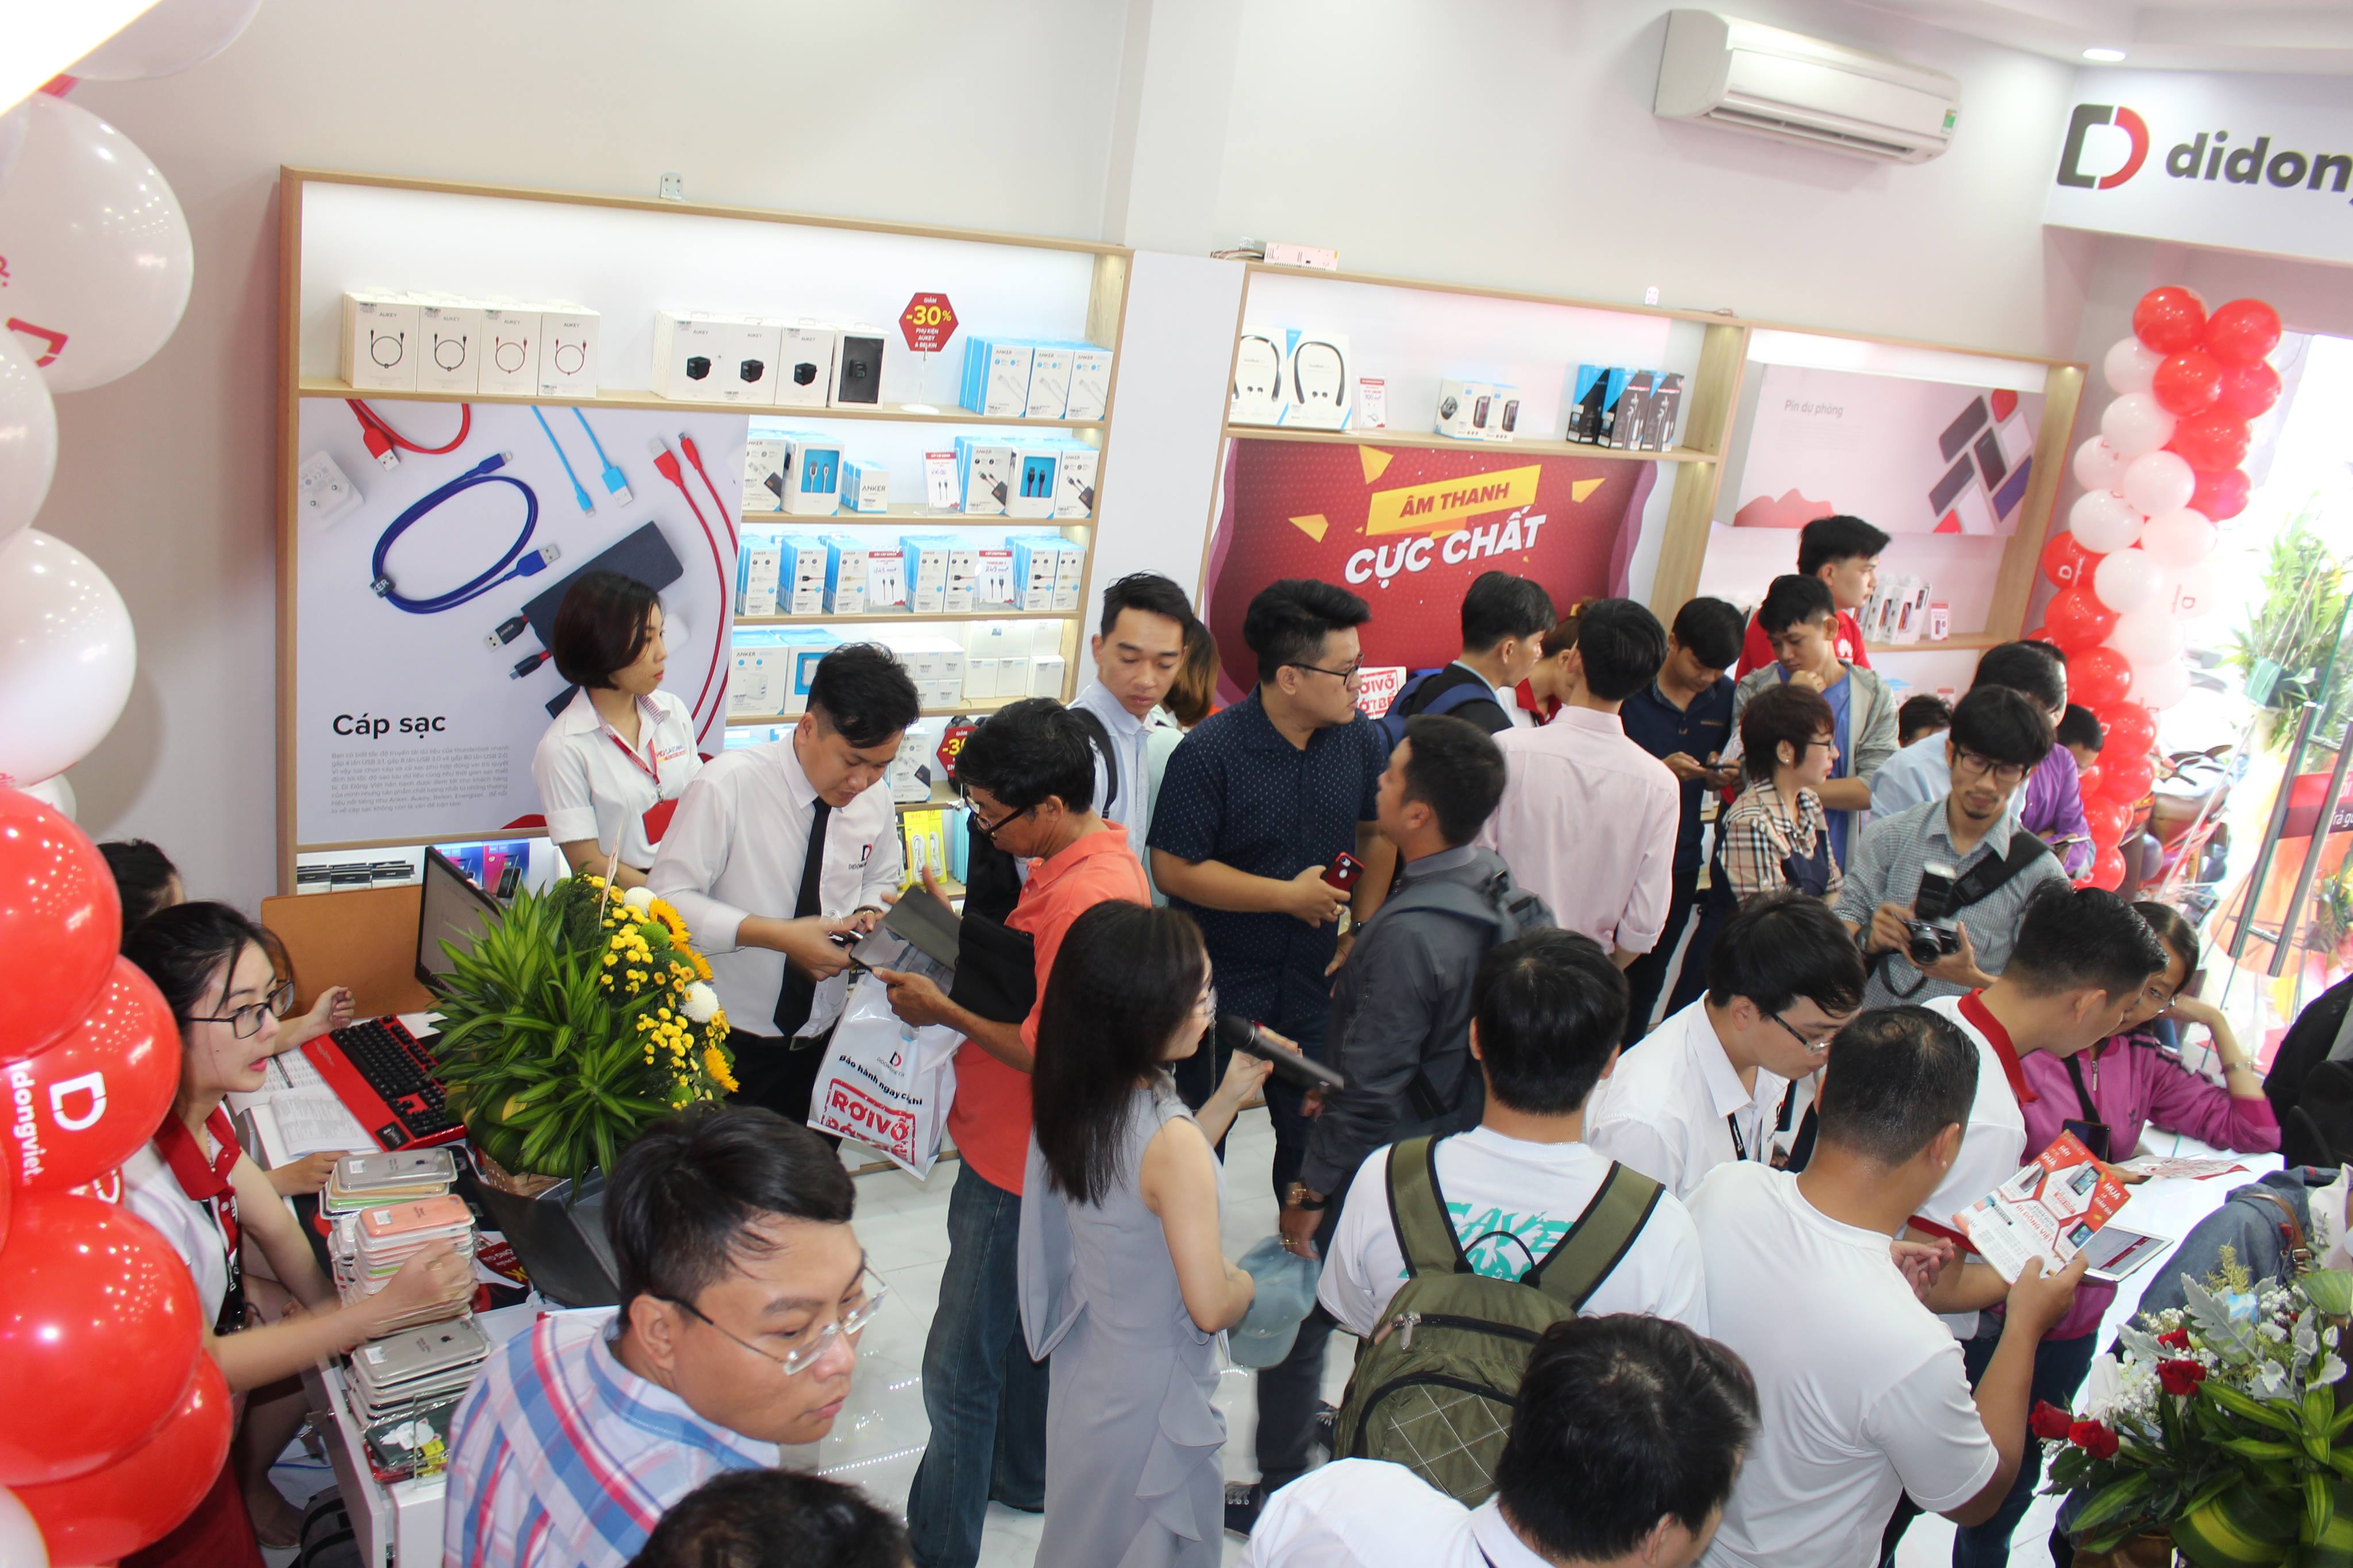 Di Động Việt bán iPhone 6S giá 999 nghìn đồng nhân dịp khai trương cửa hàng thứ 12